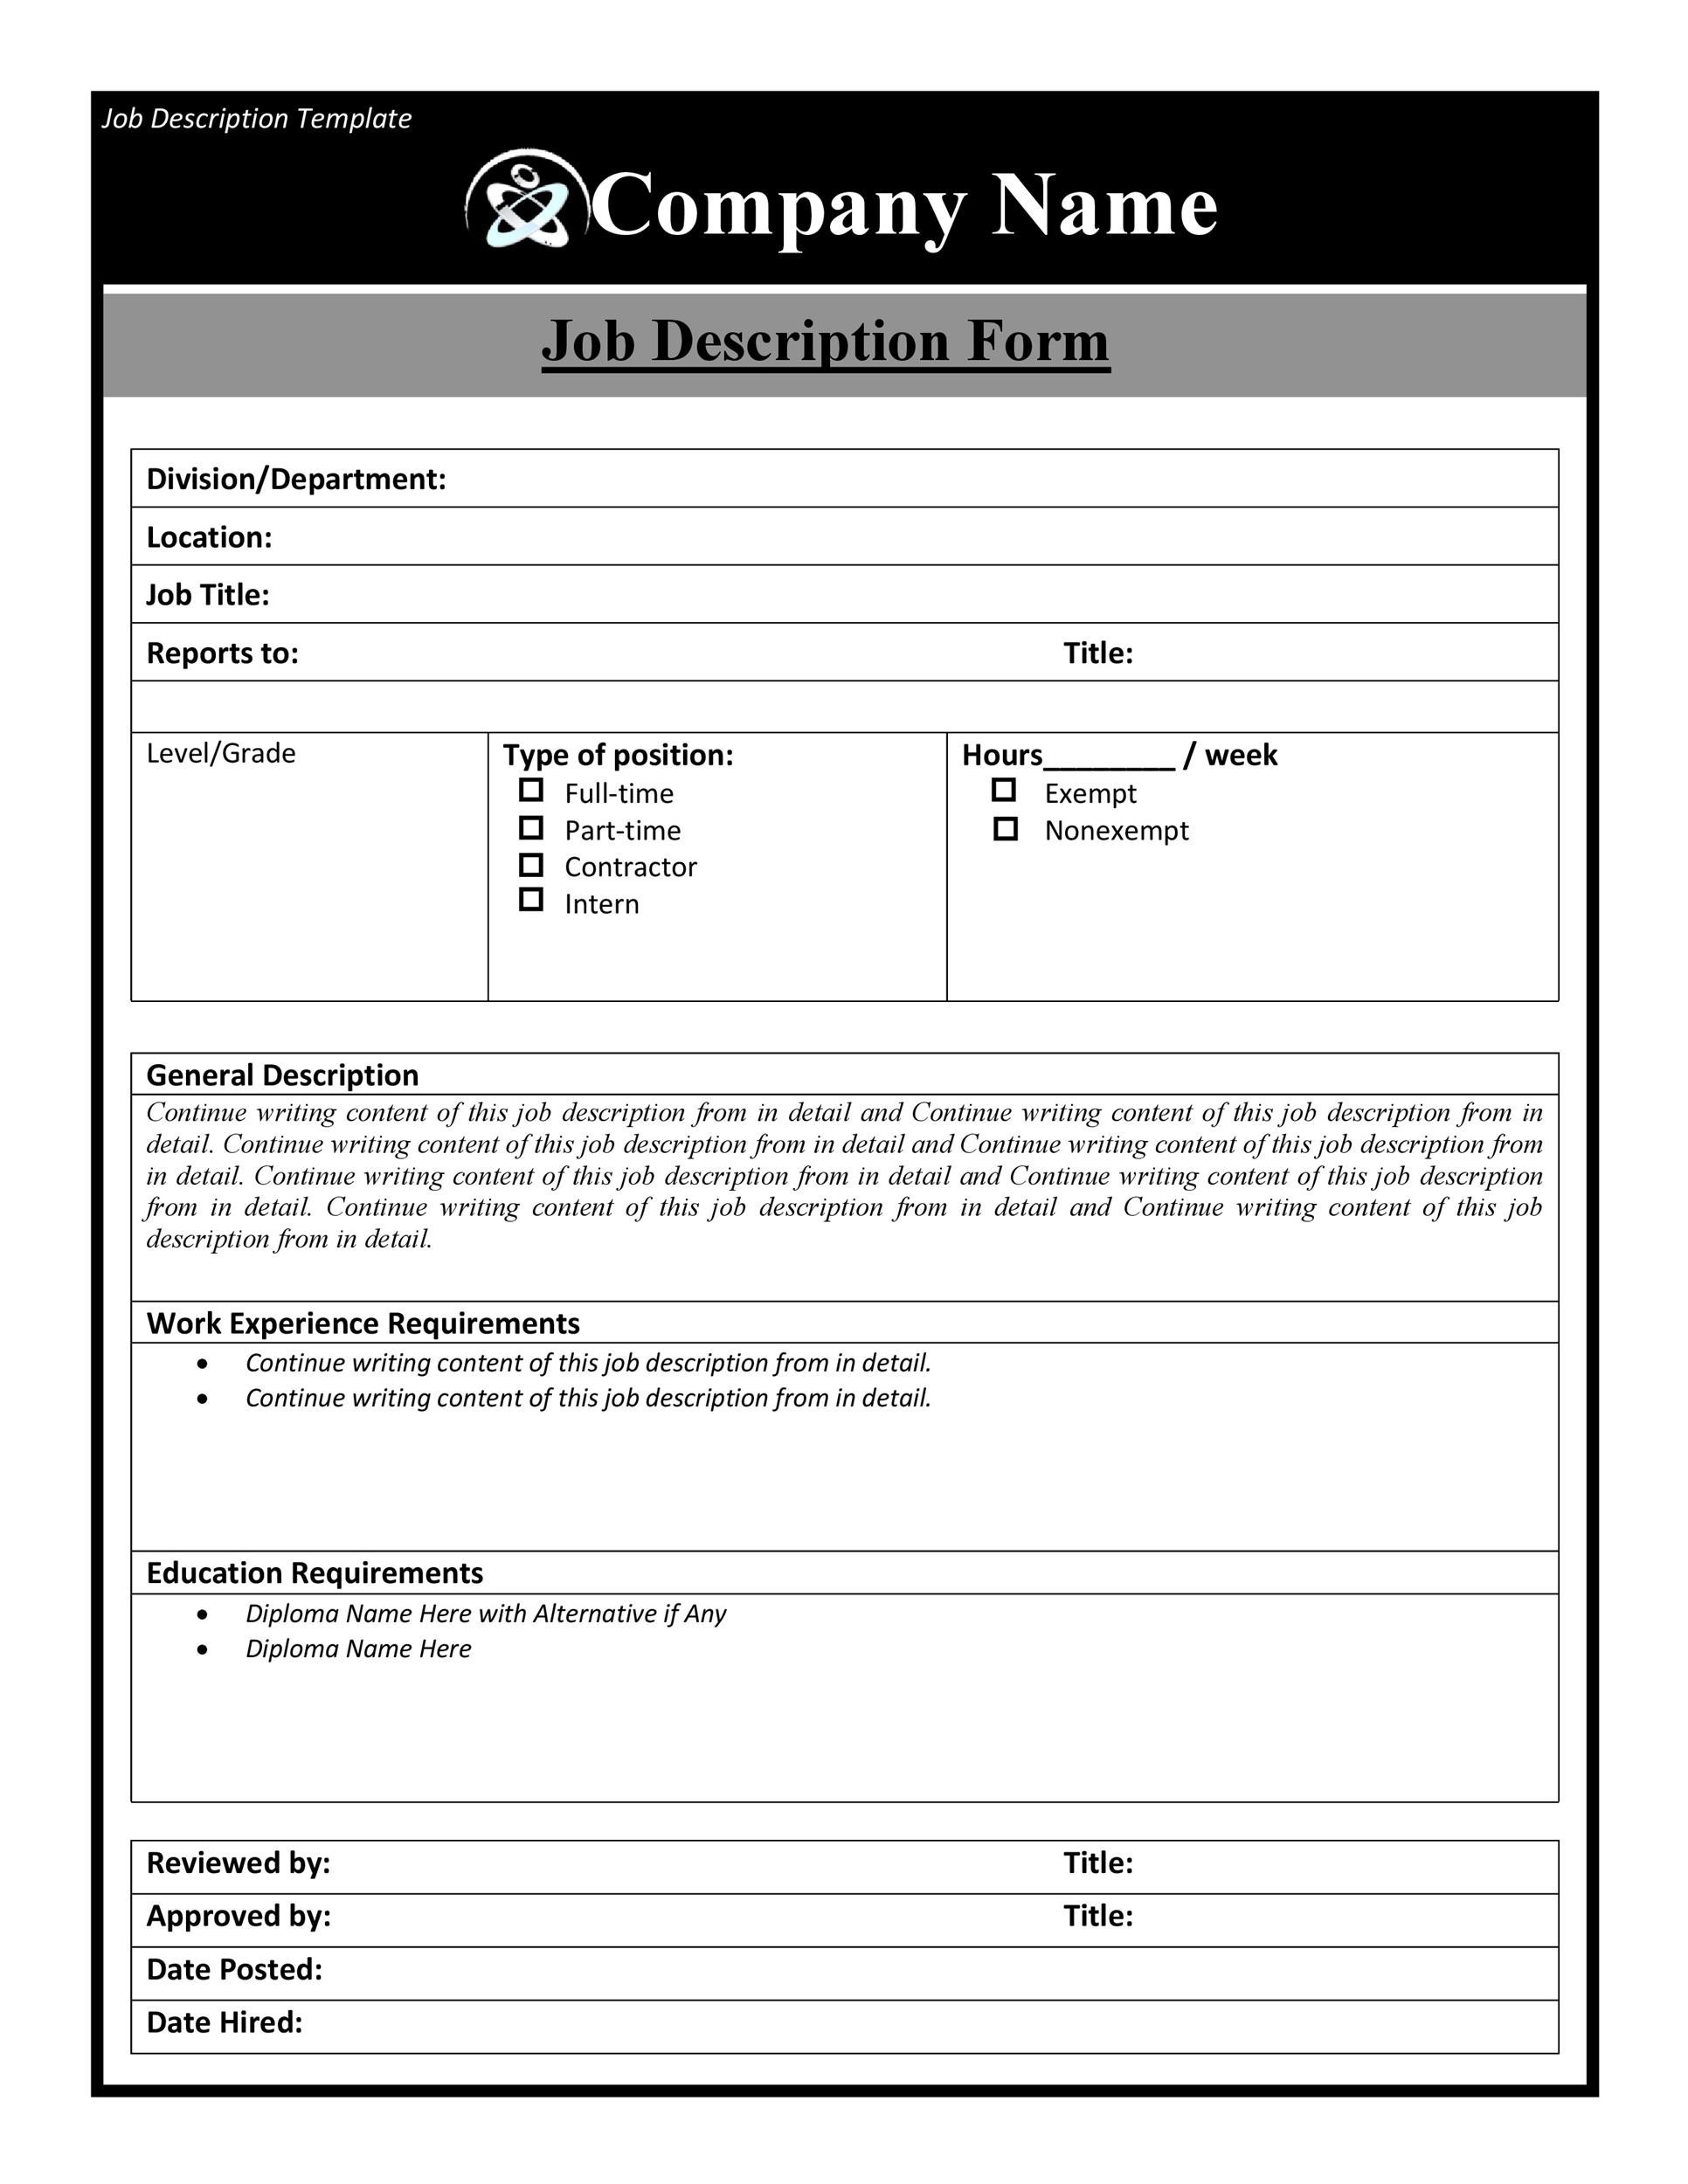 Jobs description templates jobs in florida miami